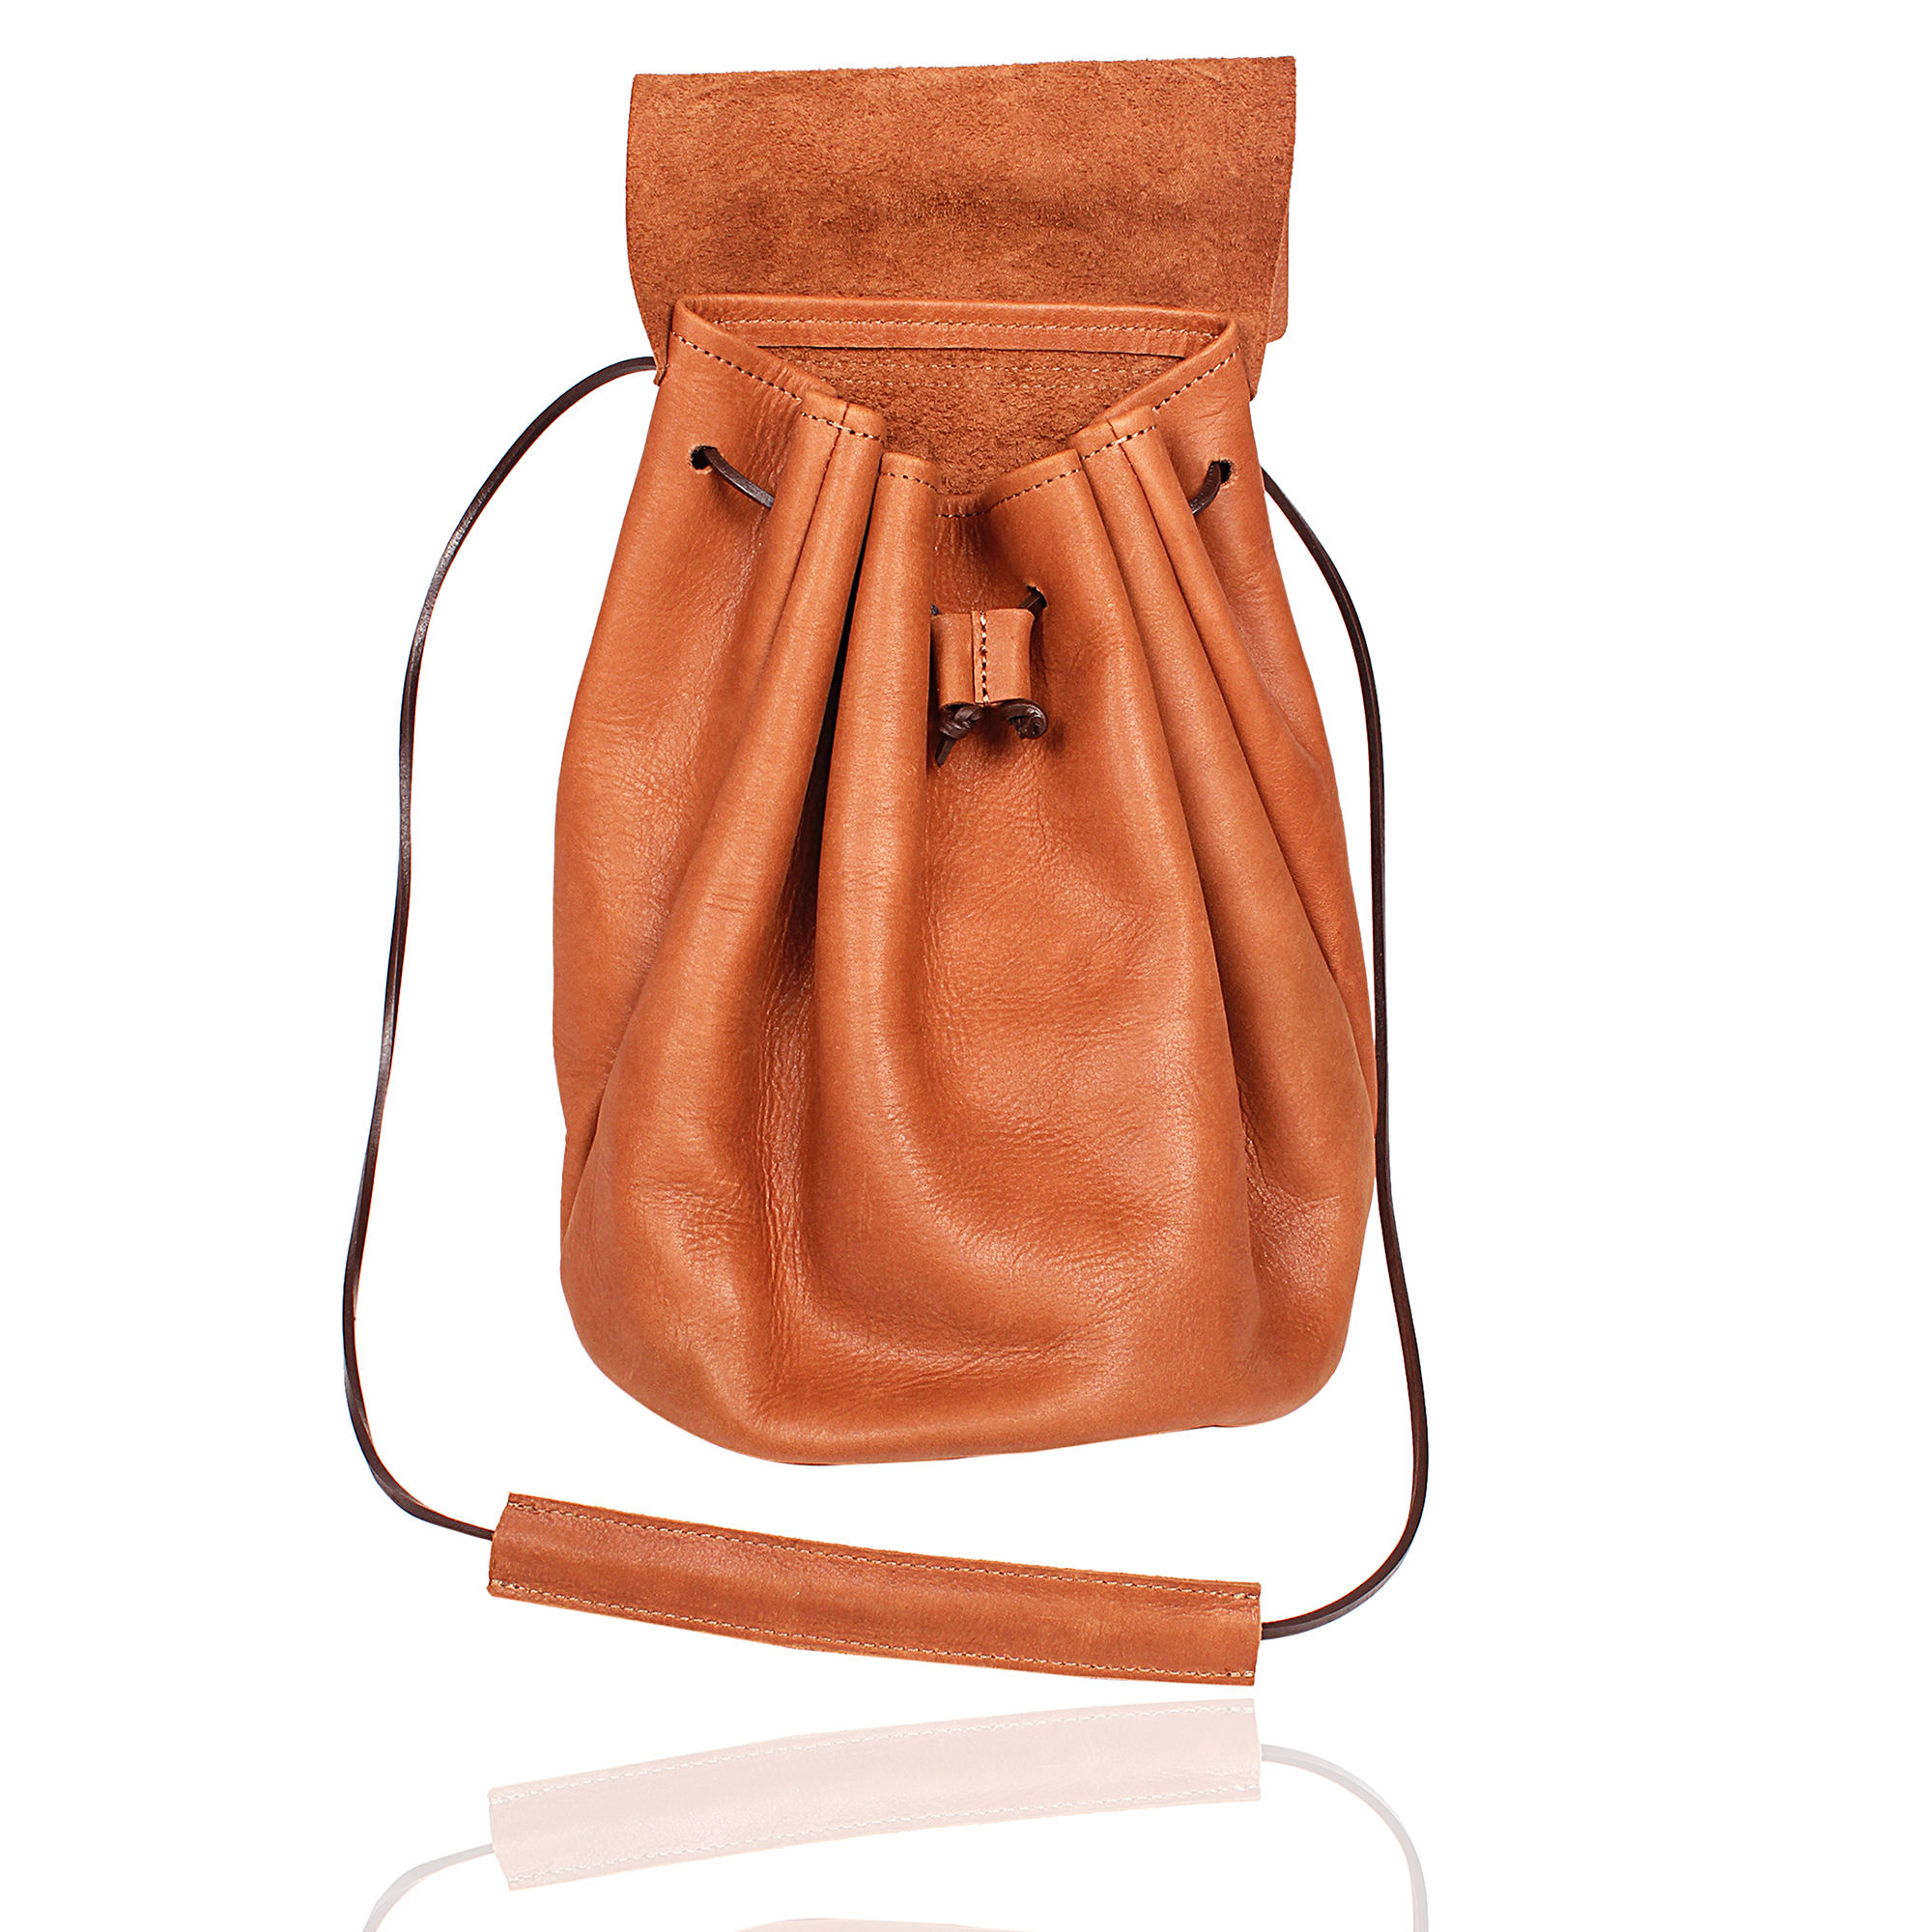 Potli Leather Bag